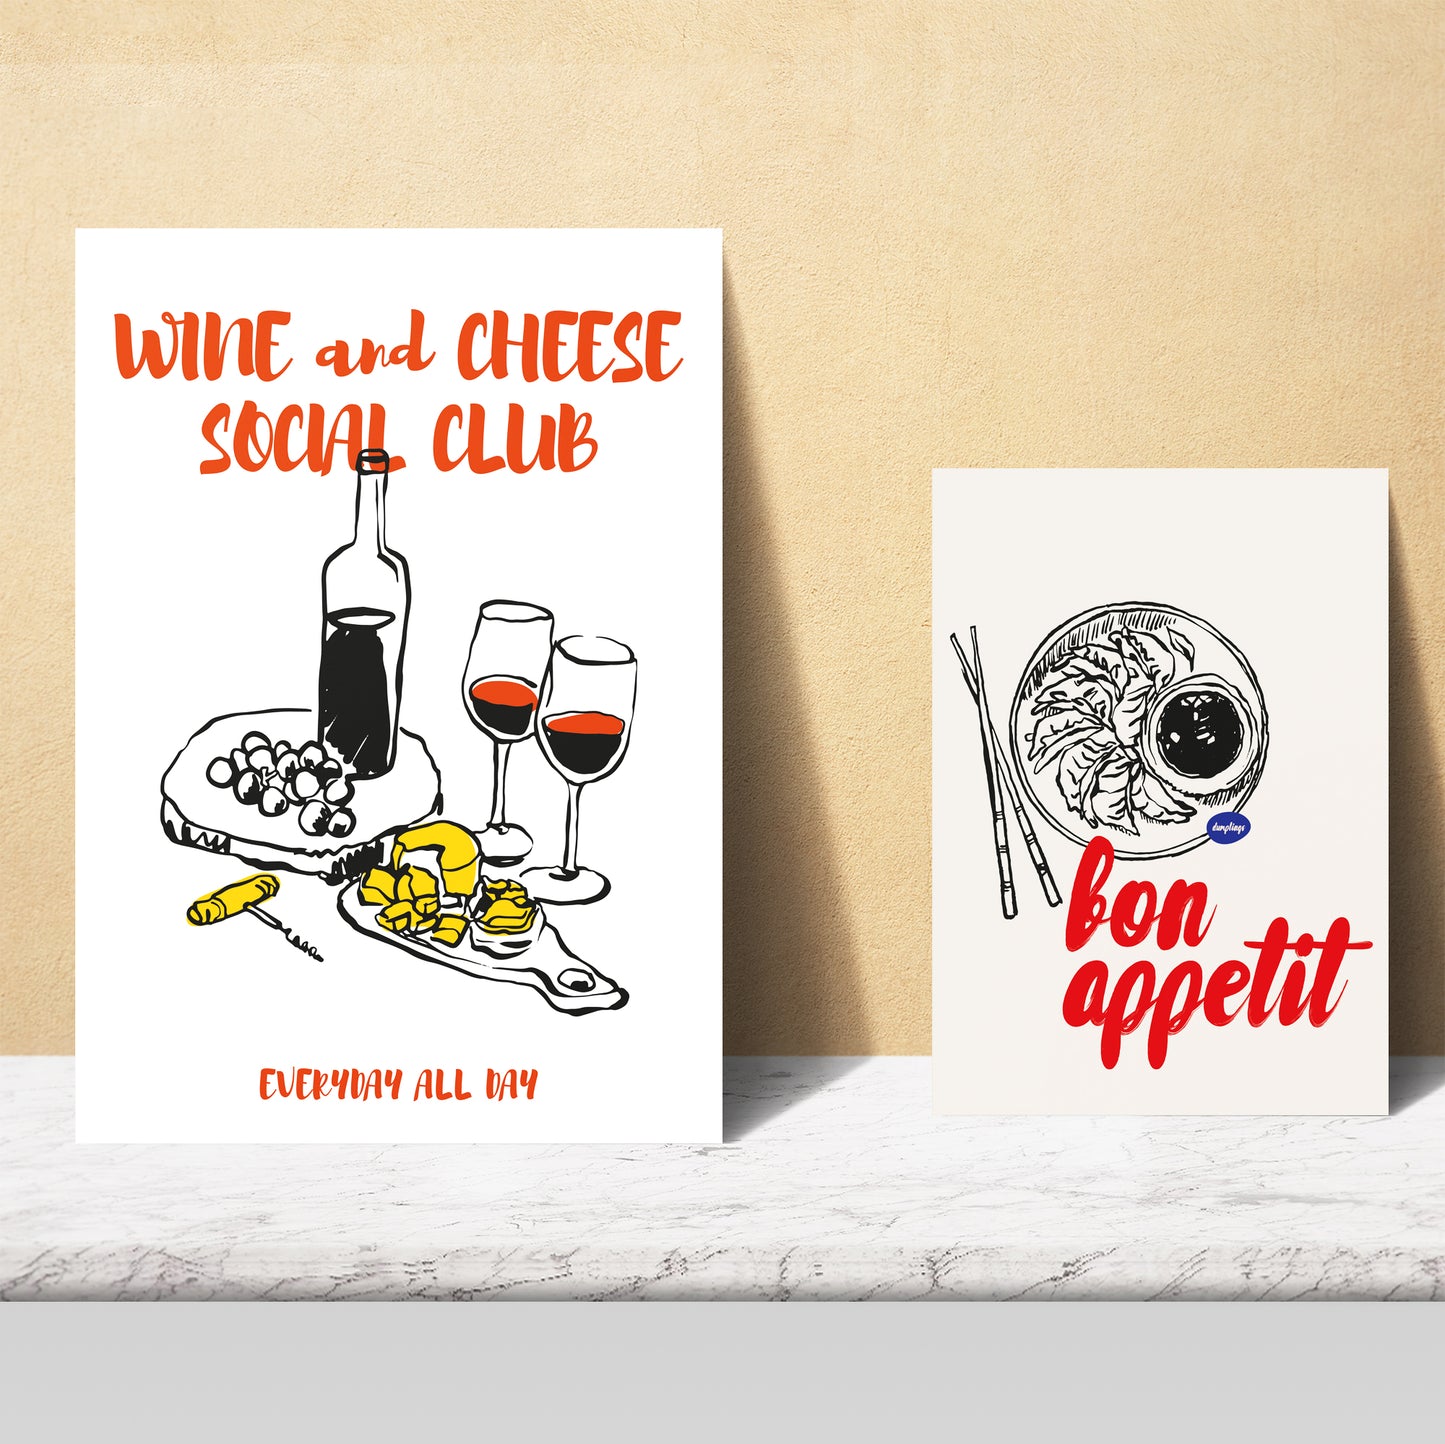 Ilustraciones de alimentos y comida estilo pop art ramen y pasta